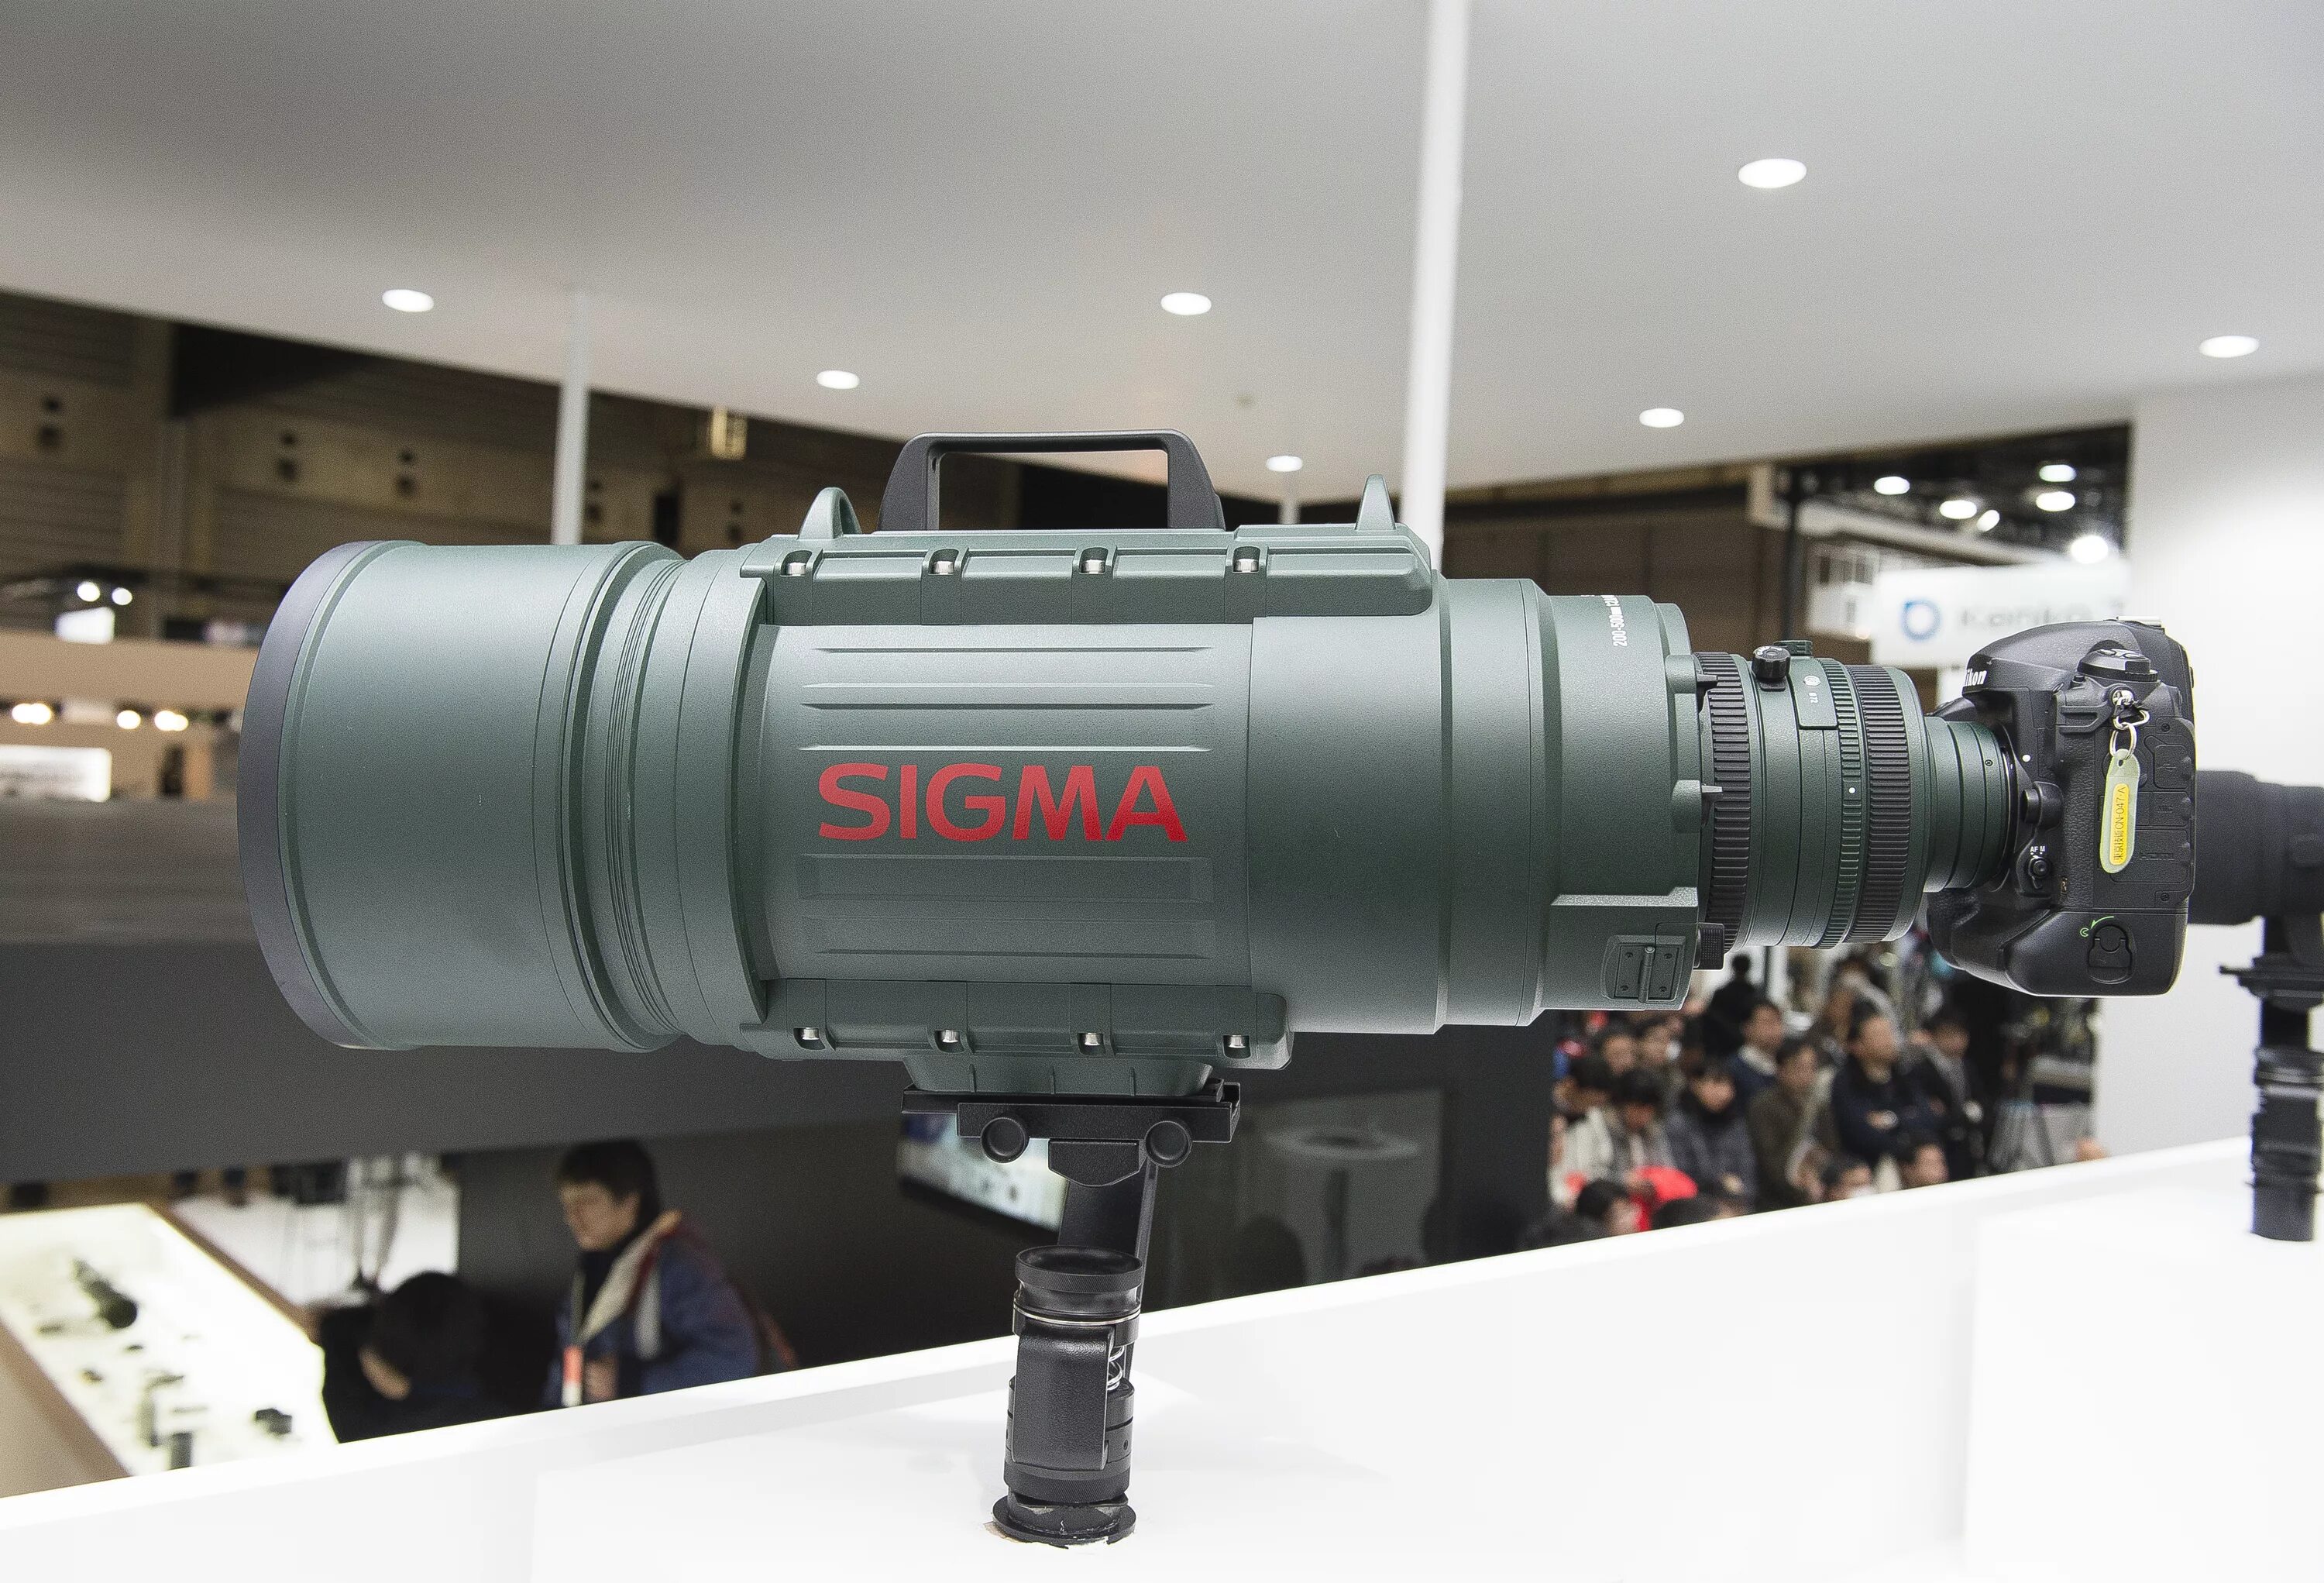 Sigma 500mm. Sigma 200-500mm f/2.8 apo ex DG. Sigma 200-500 mm f2.8. Sigma 200-500 f/2.8. Sigma af 200-500mm f/2.8.